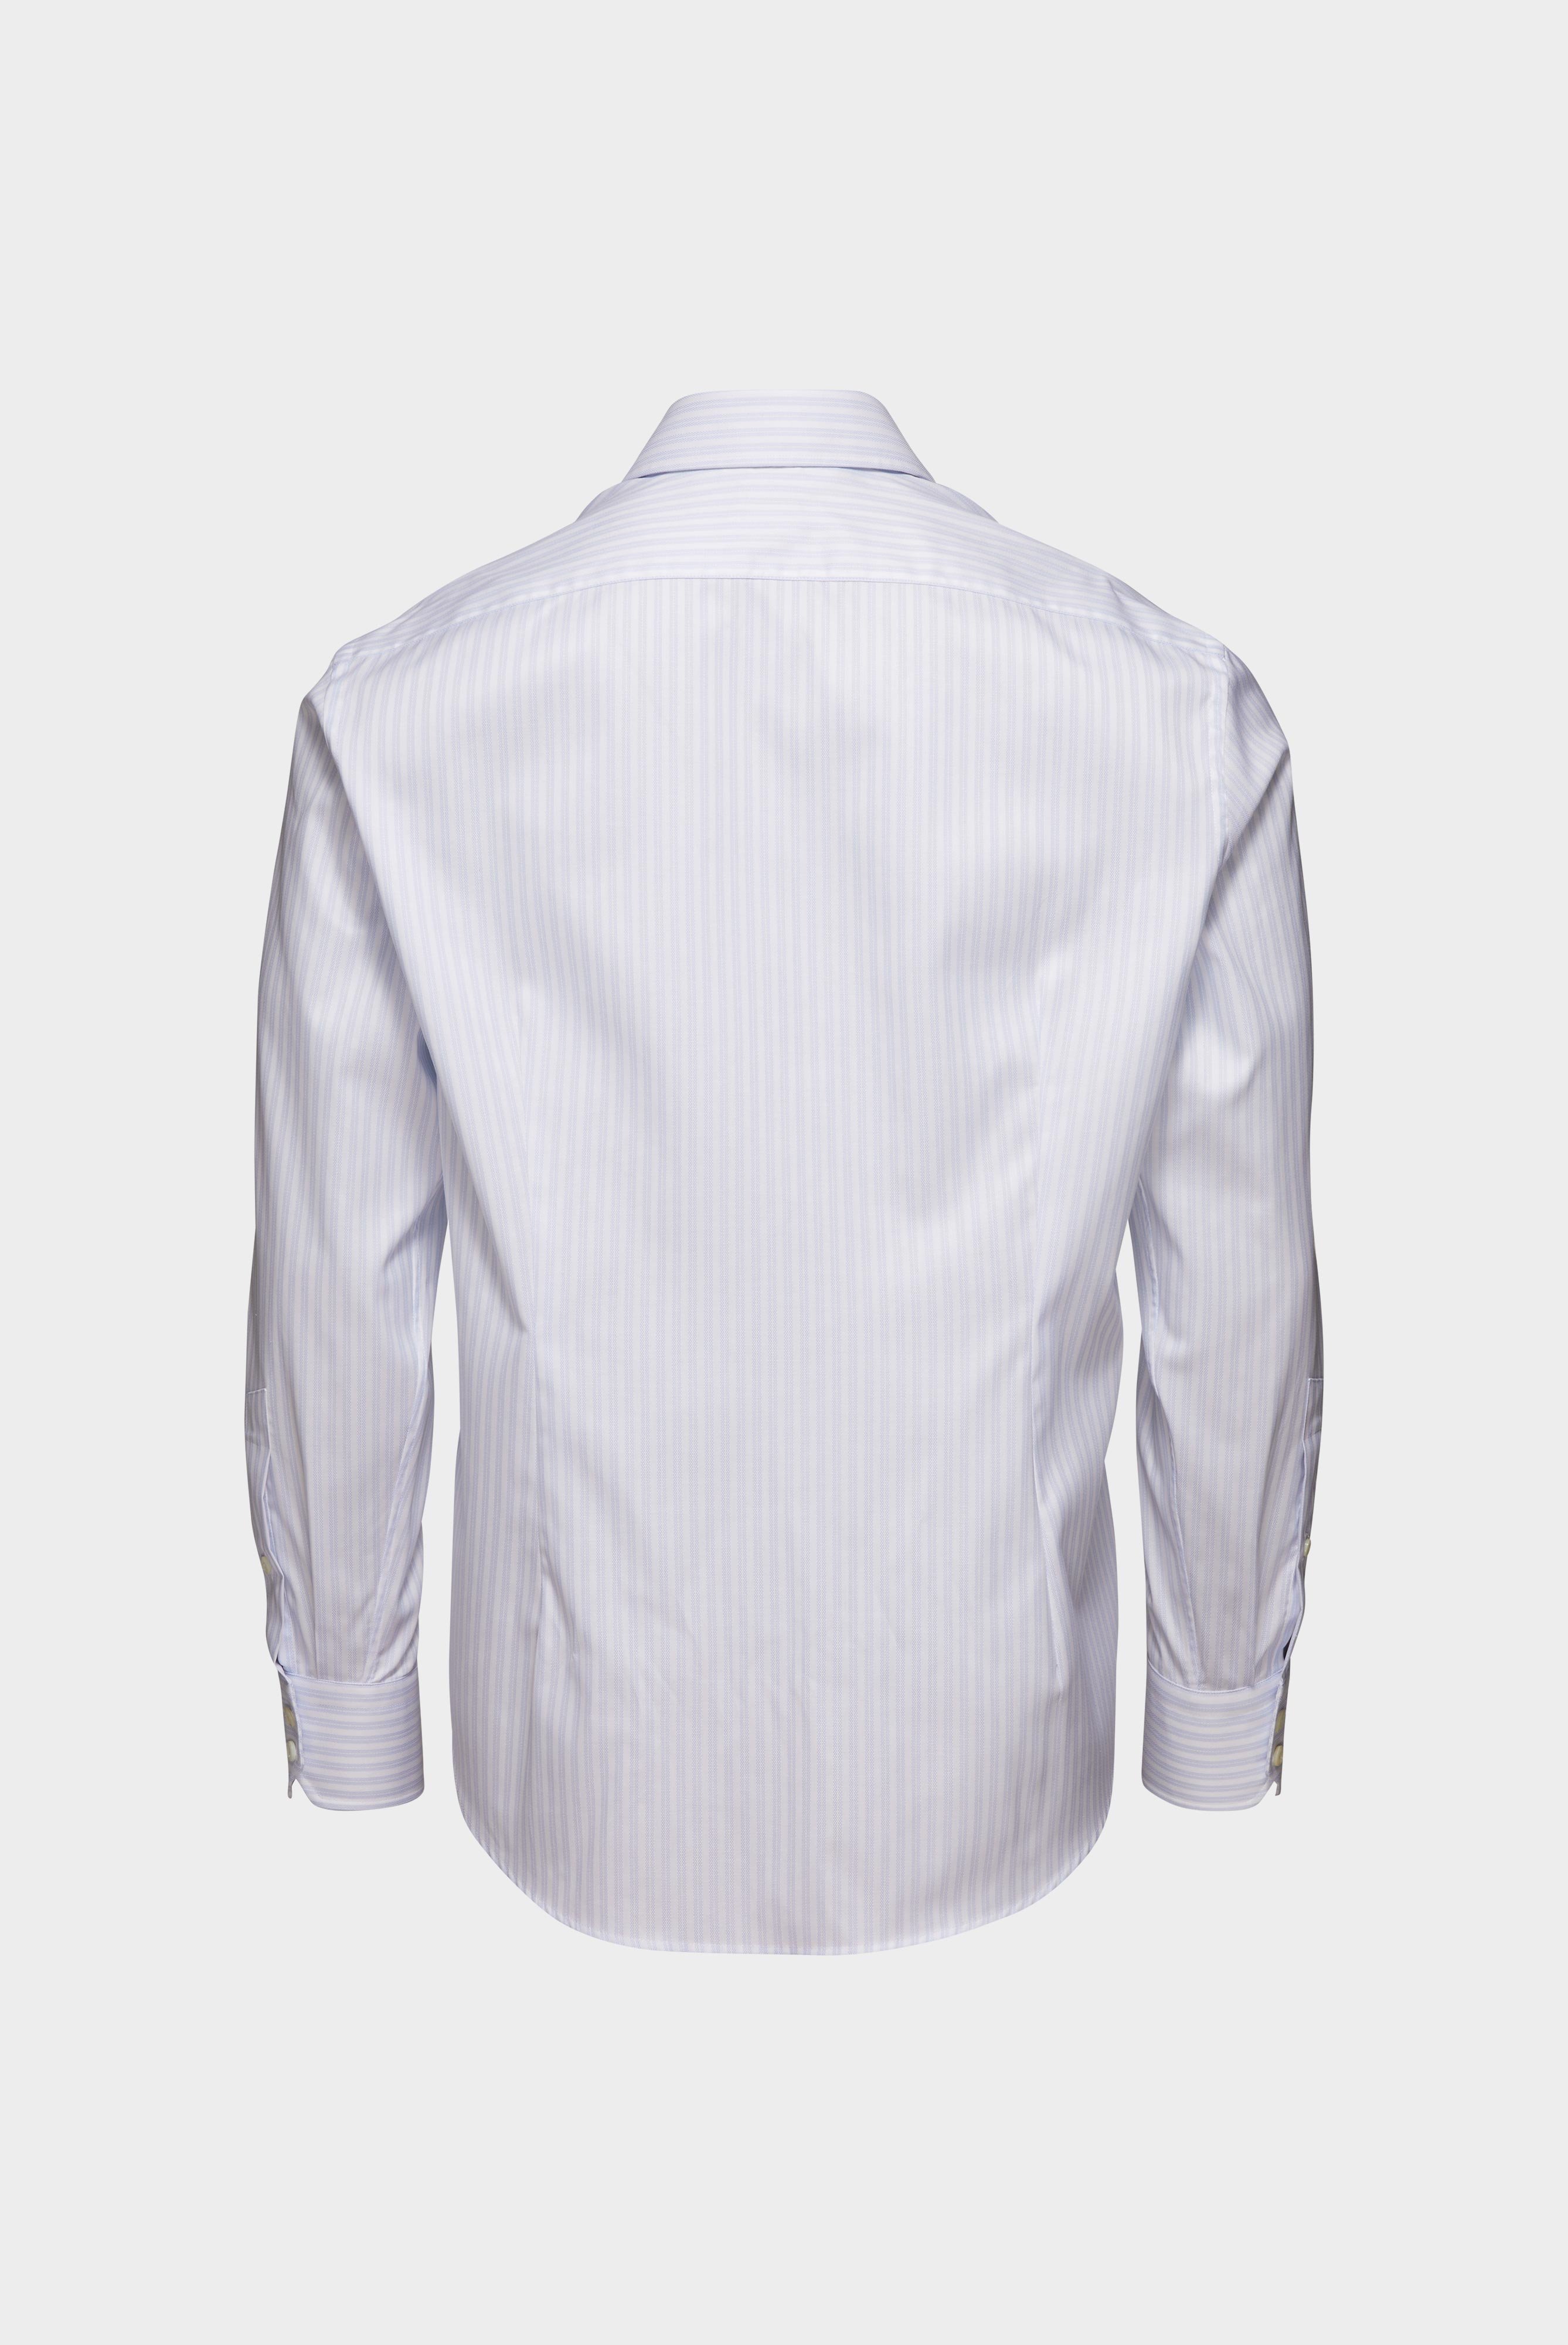 Bügelleichte Hemden+Bügelfreies Hemd mit Streifen Slim Fit+20.2019.BQ.161106.007.38